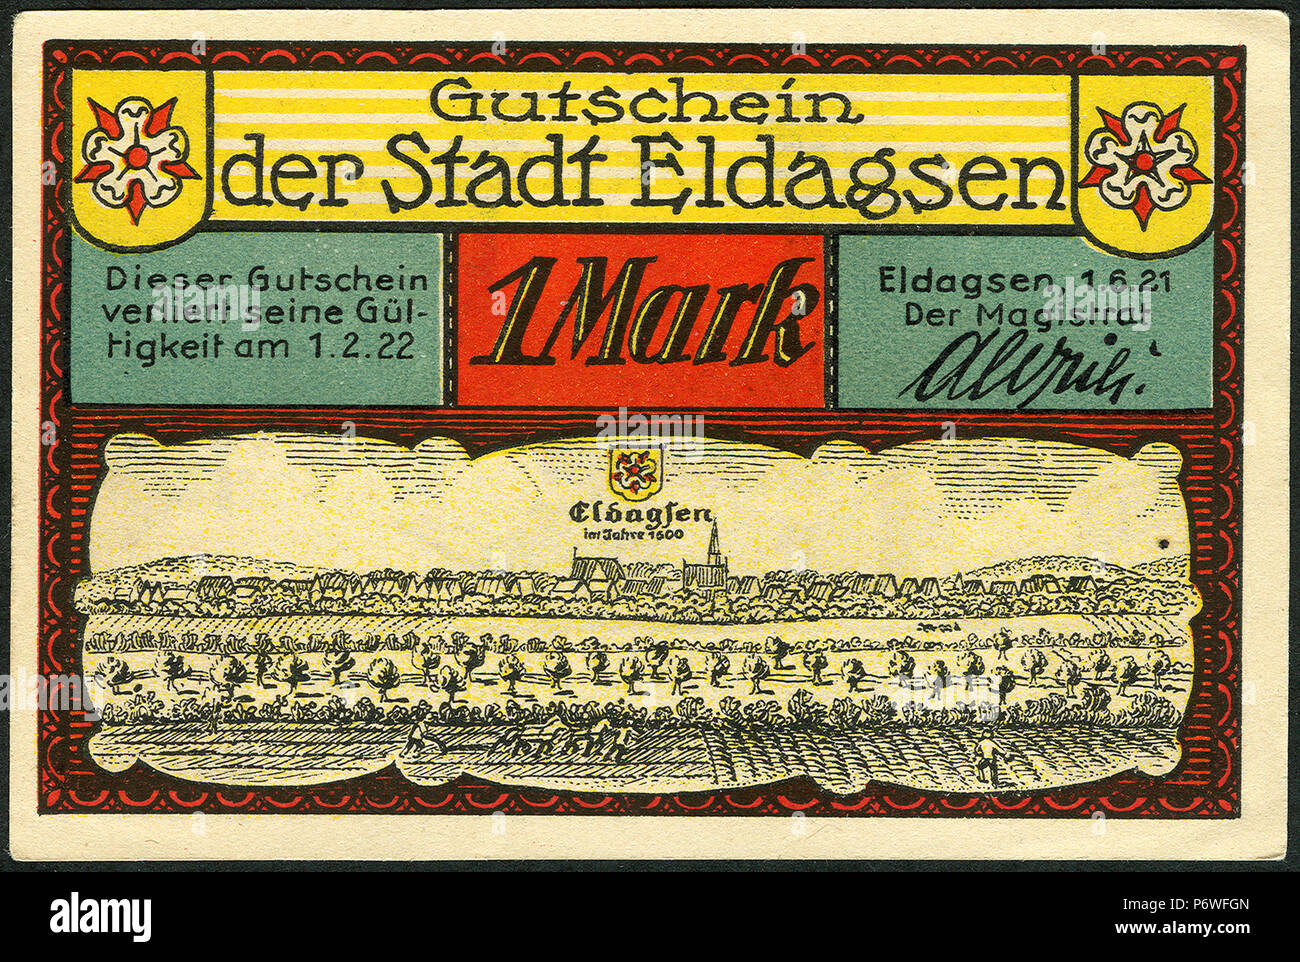 1921-06-01 Gutschein der Stadt Eldagsen, 1Mark, gültig bis 1. Februar 1922, c, faksimilierte Unterschrift der Magistrat, Merian-Stich um 1600. Stock Photo